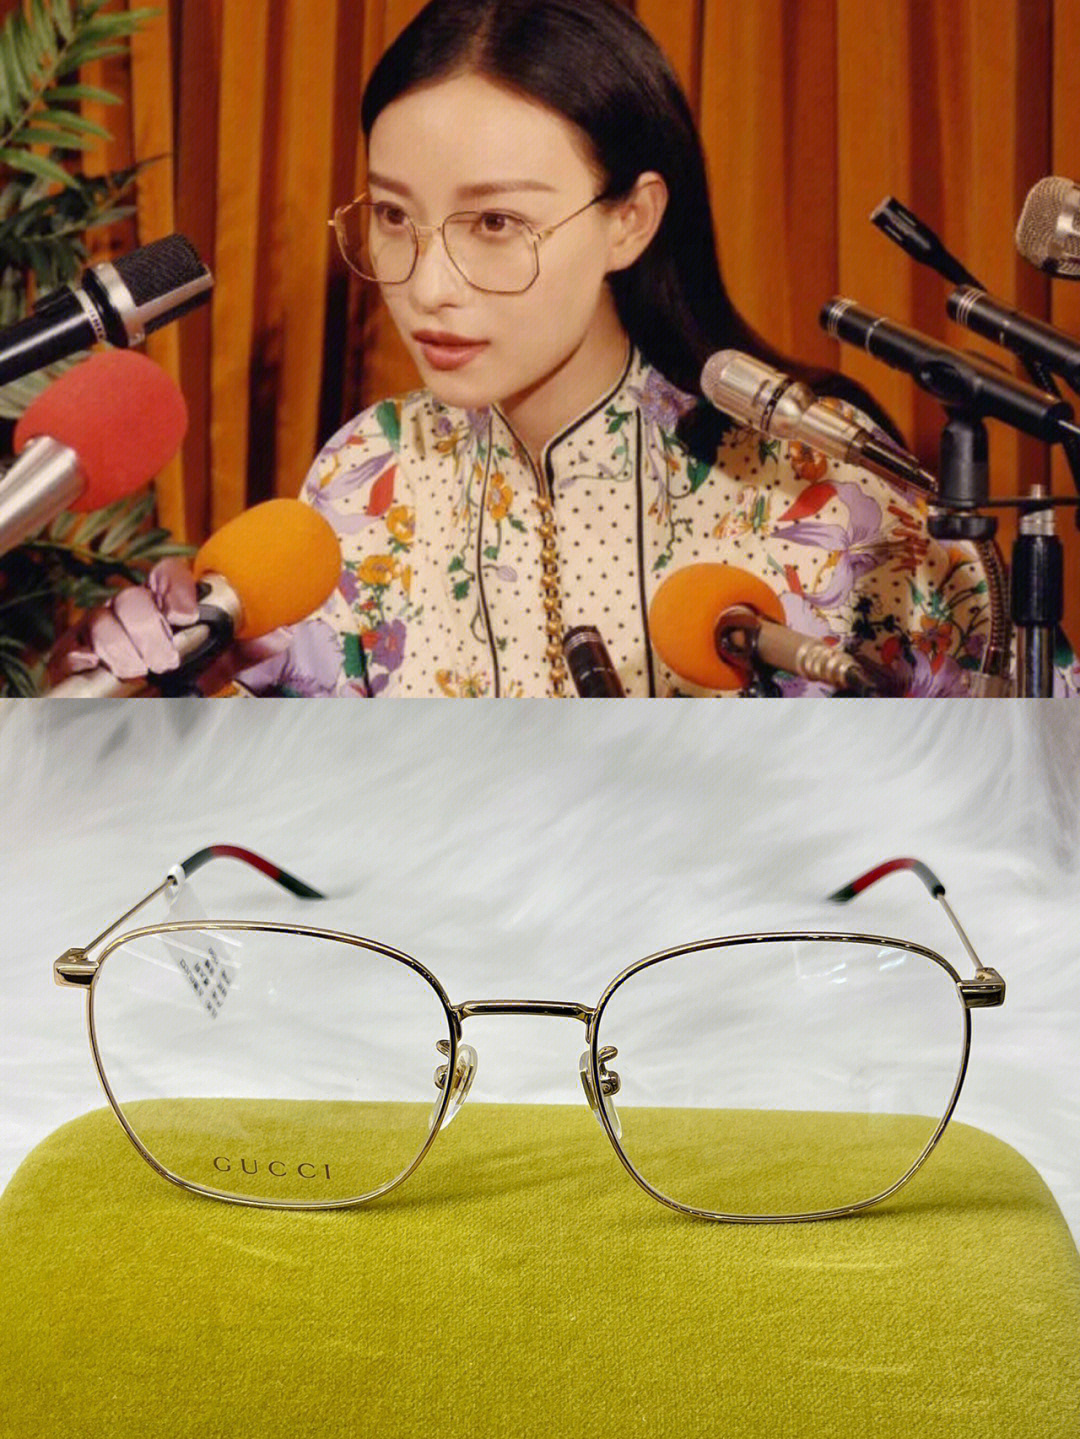 倪妮同款gucci 眼镜框真的吼吼看99宝藏眼镜店!